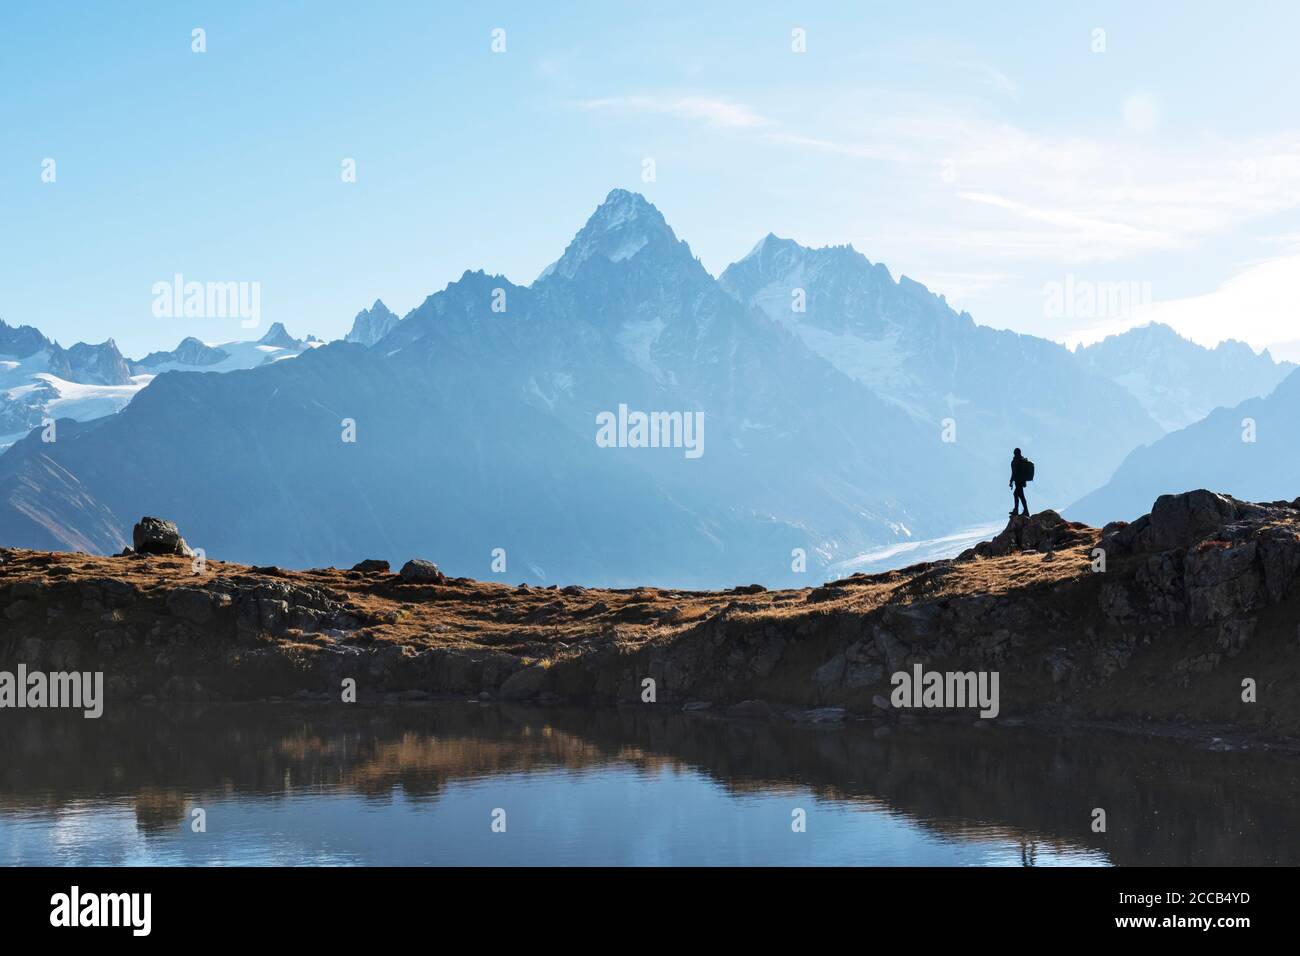 Vista increíble de la cordillera de Monte Bianco con turistas de fondo. Lago Lac de Cheserys, Chamonix, Alpes Graianos. Fotografía de paisajes Foto de stock